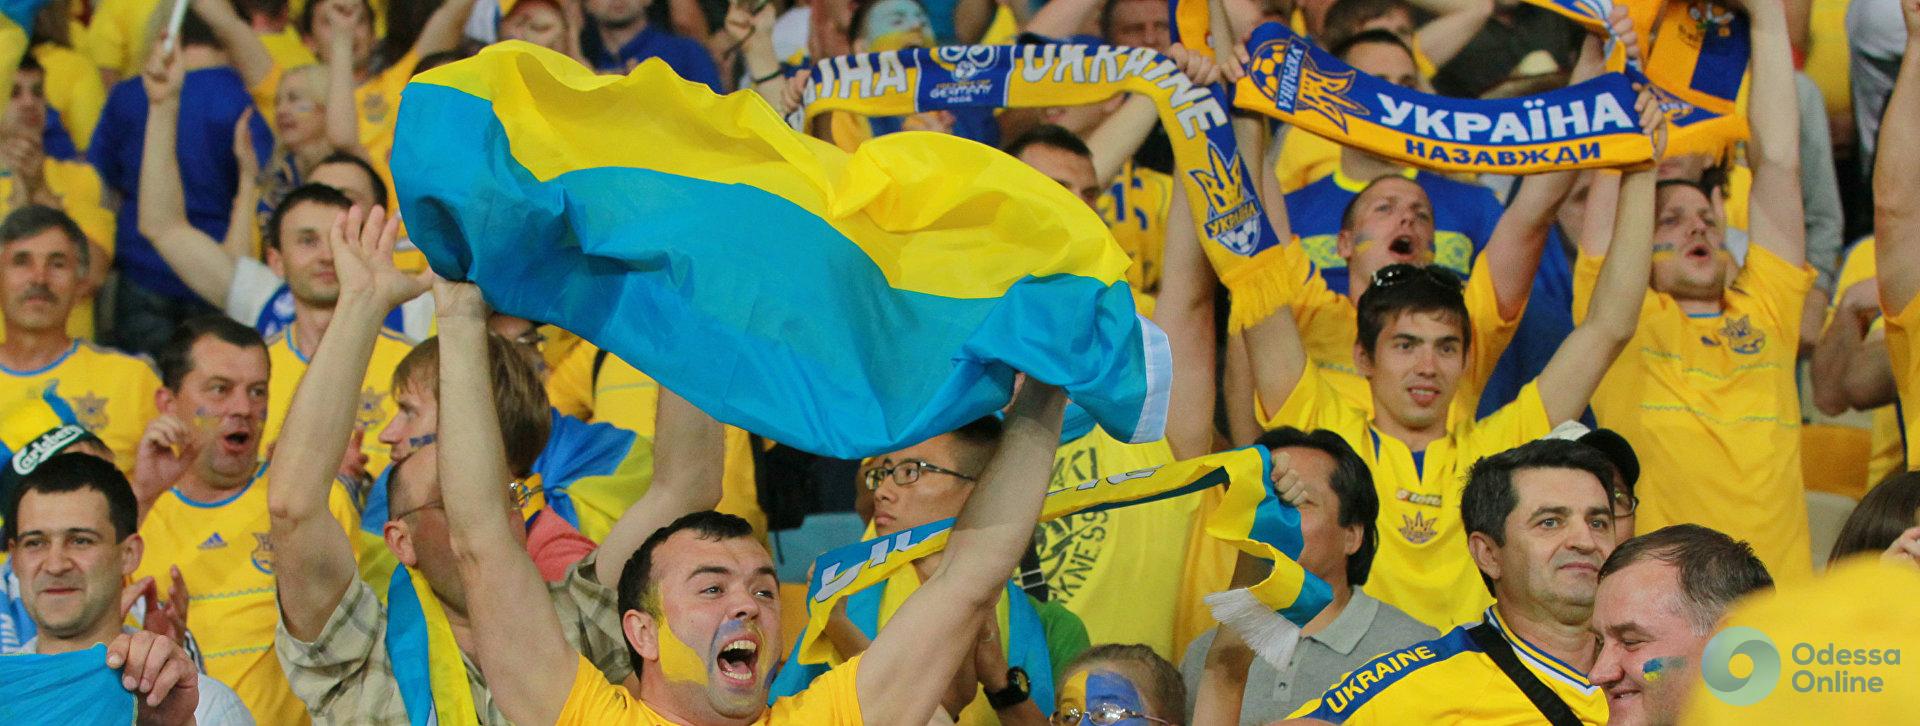 Львов – Одесса: полиция разбиралась с пьяными футбольными фанатами